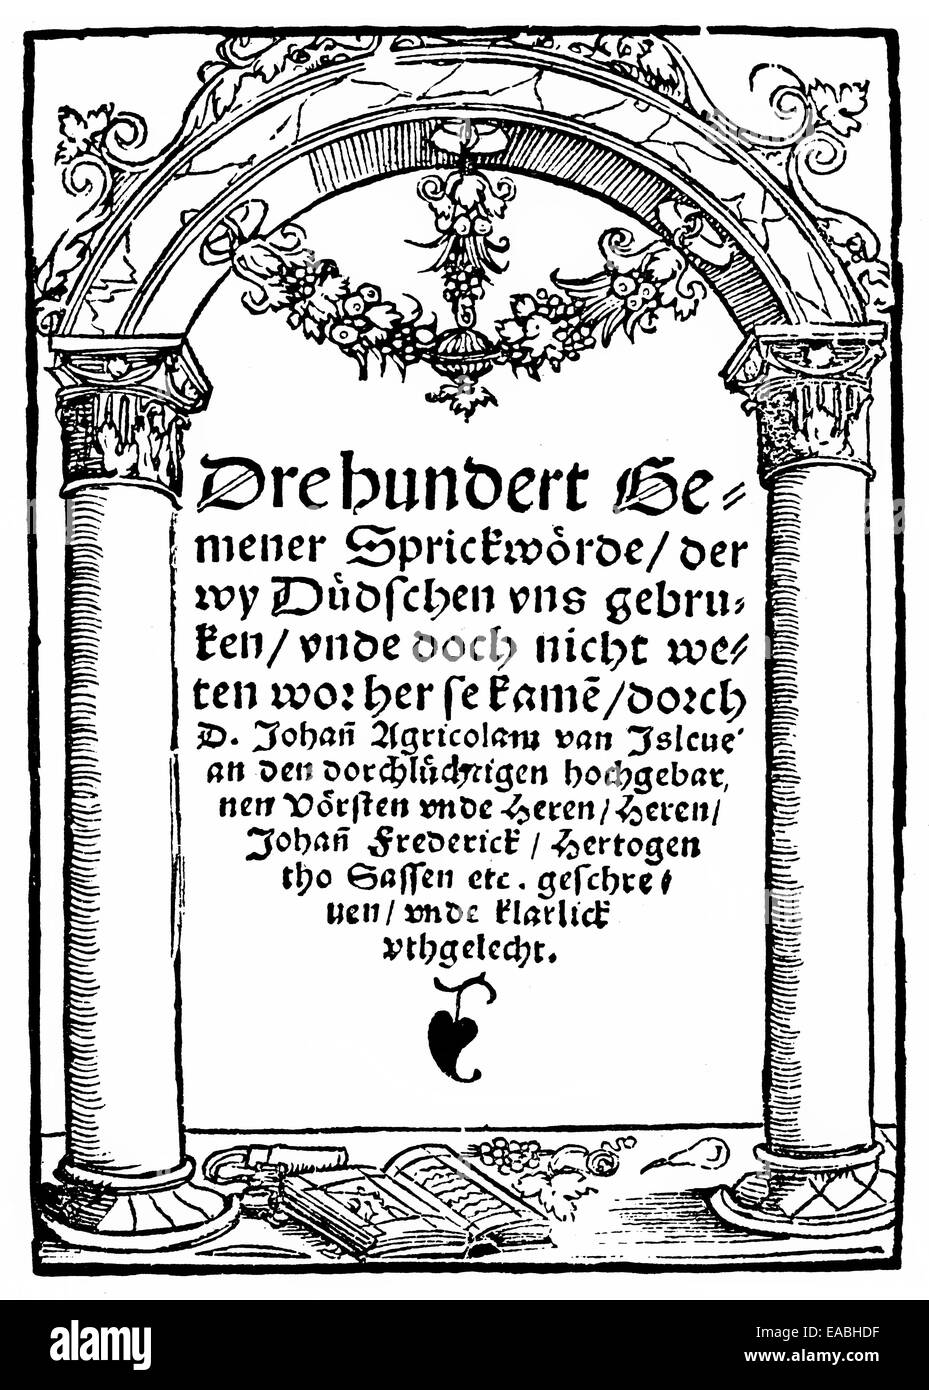 1528, pagina anteriore del libro dei proverbi di Johannes Agricola, 1494 - 1566, un riformatore tedesco, 1528 Titelseite der Sprichwörter Foto Stock